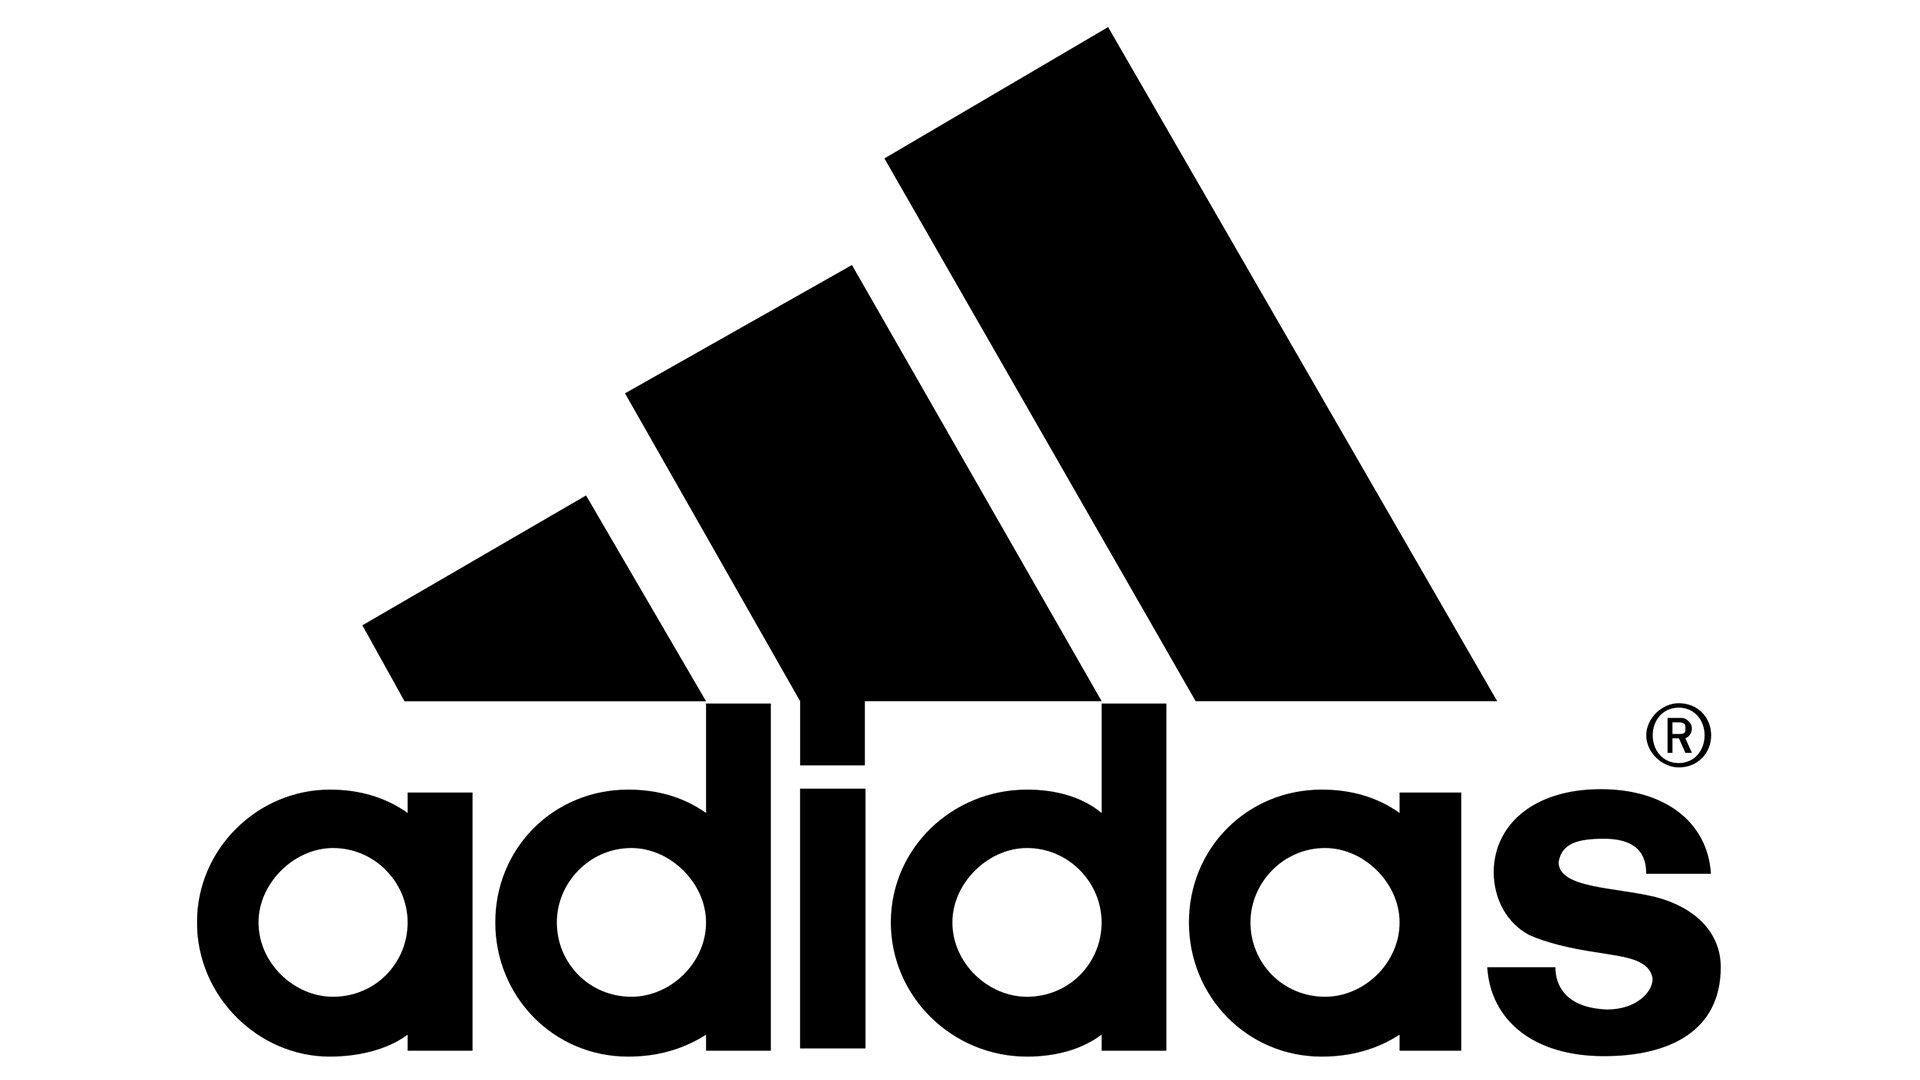 Adidas-logo